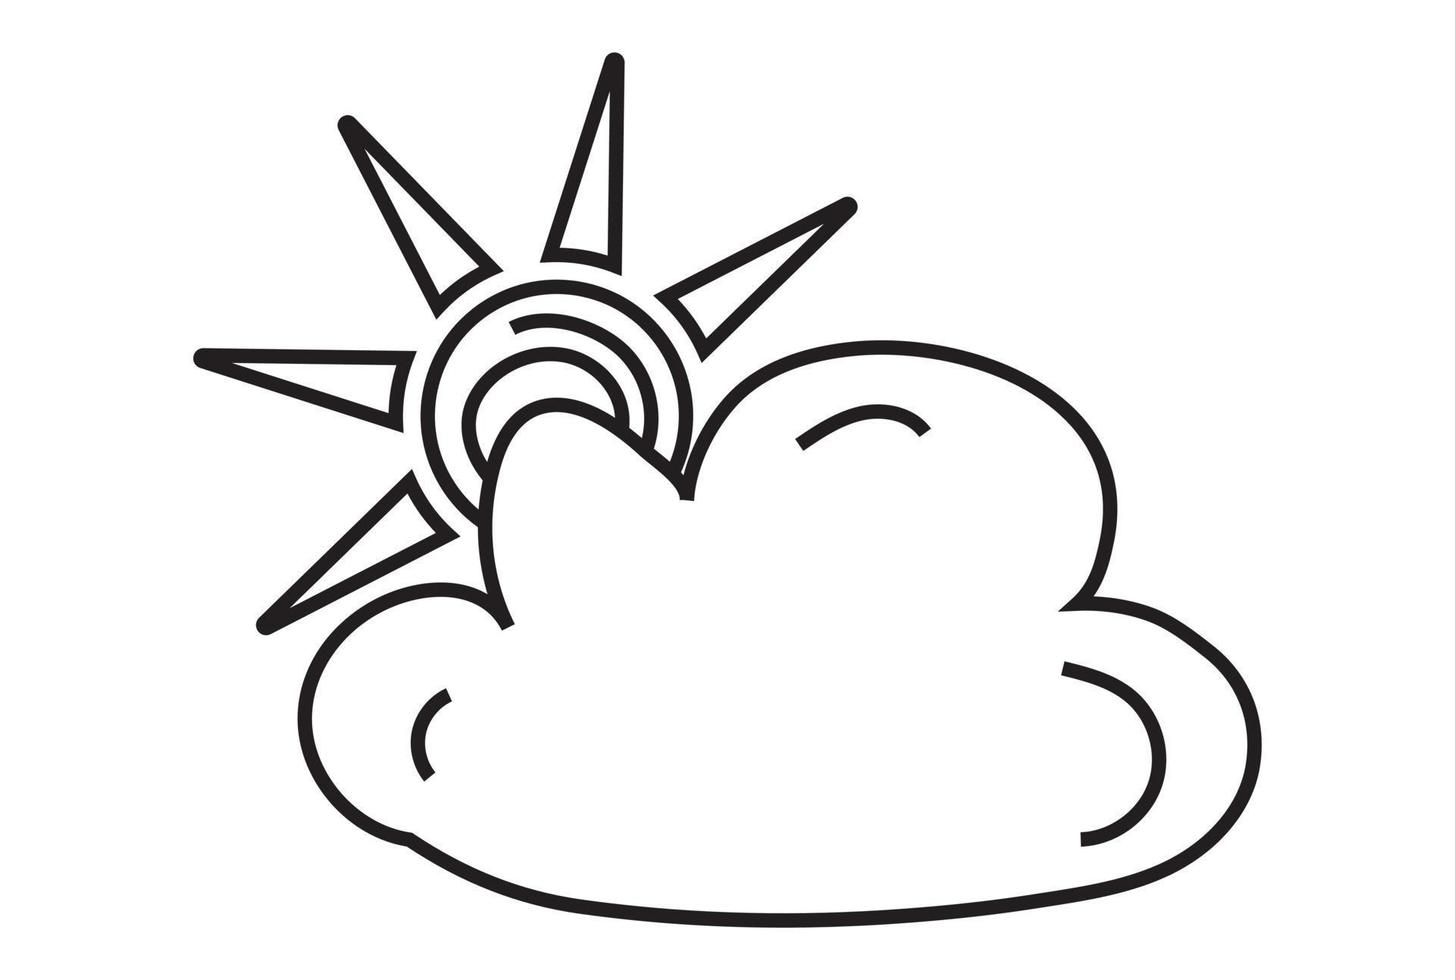 nuvole che bloccano parzialmente il sole - icona line art per app o sito Web vettore